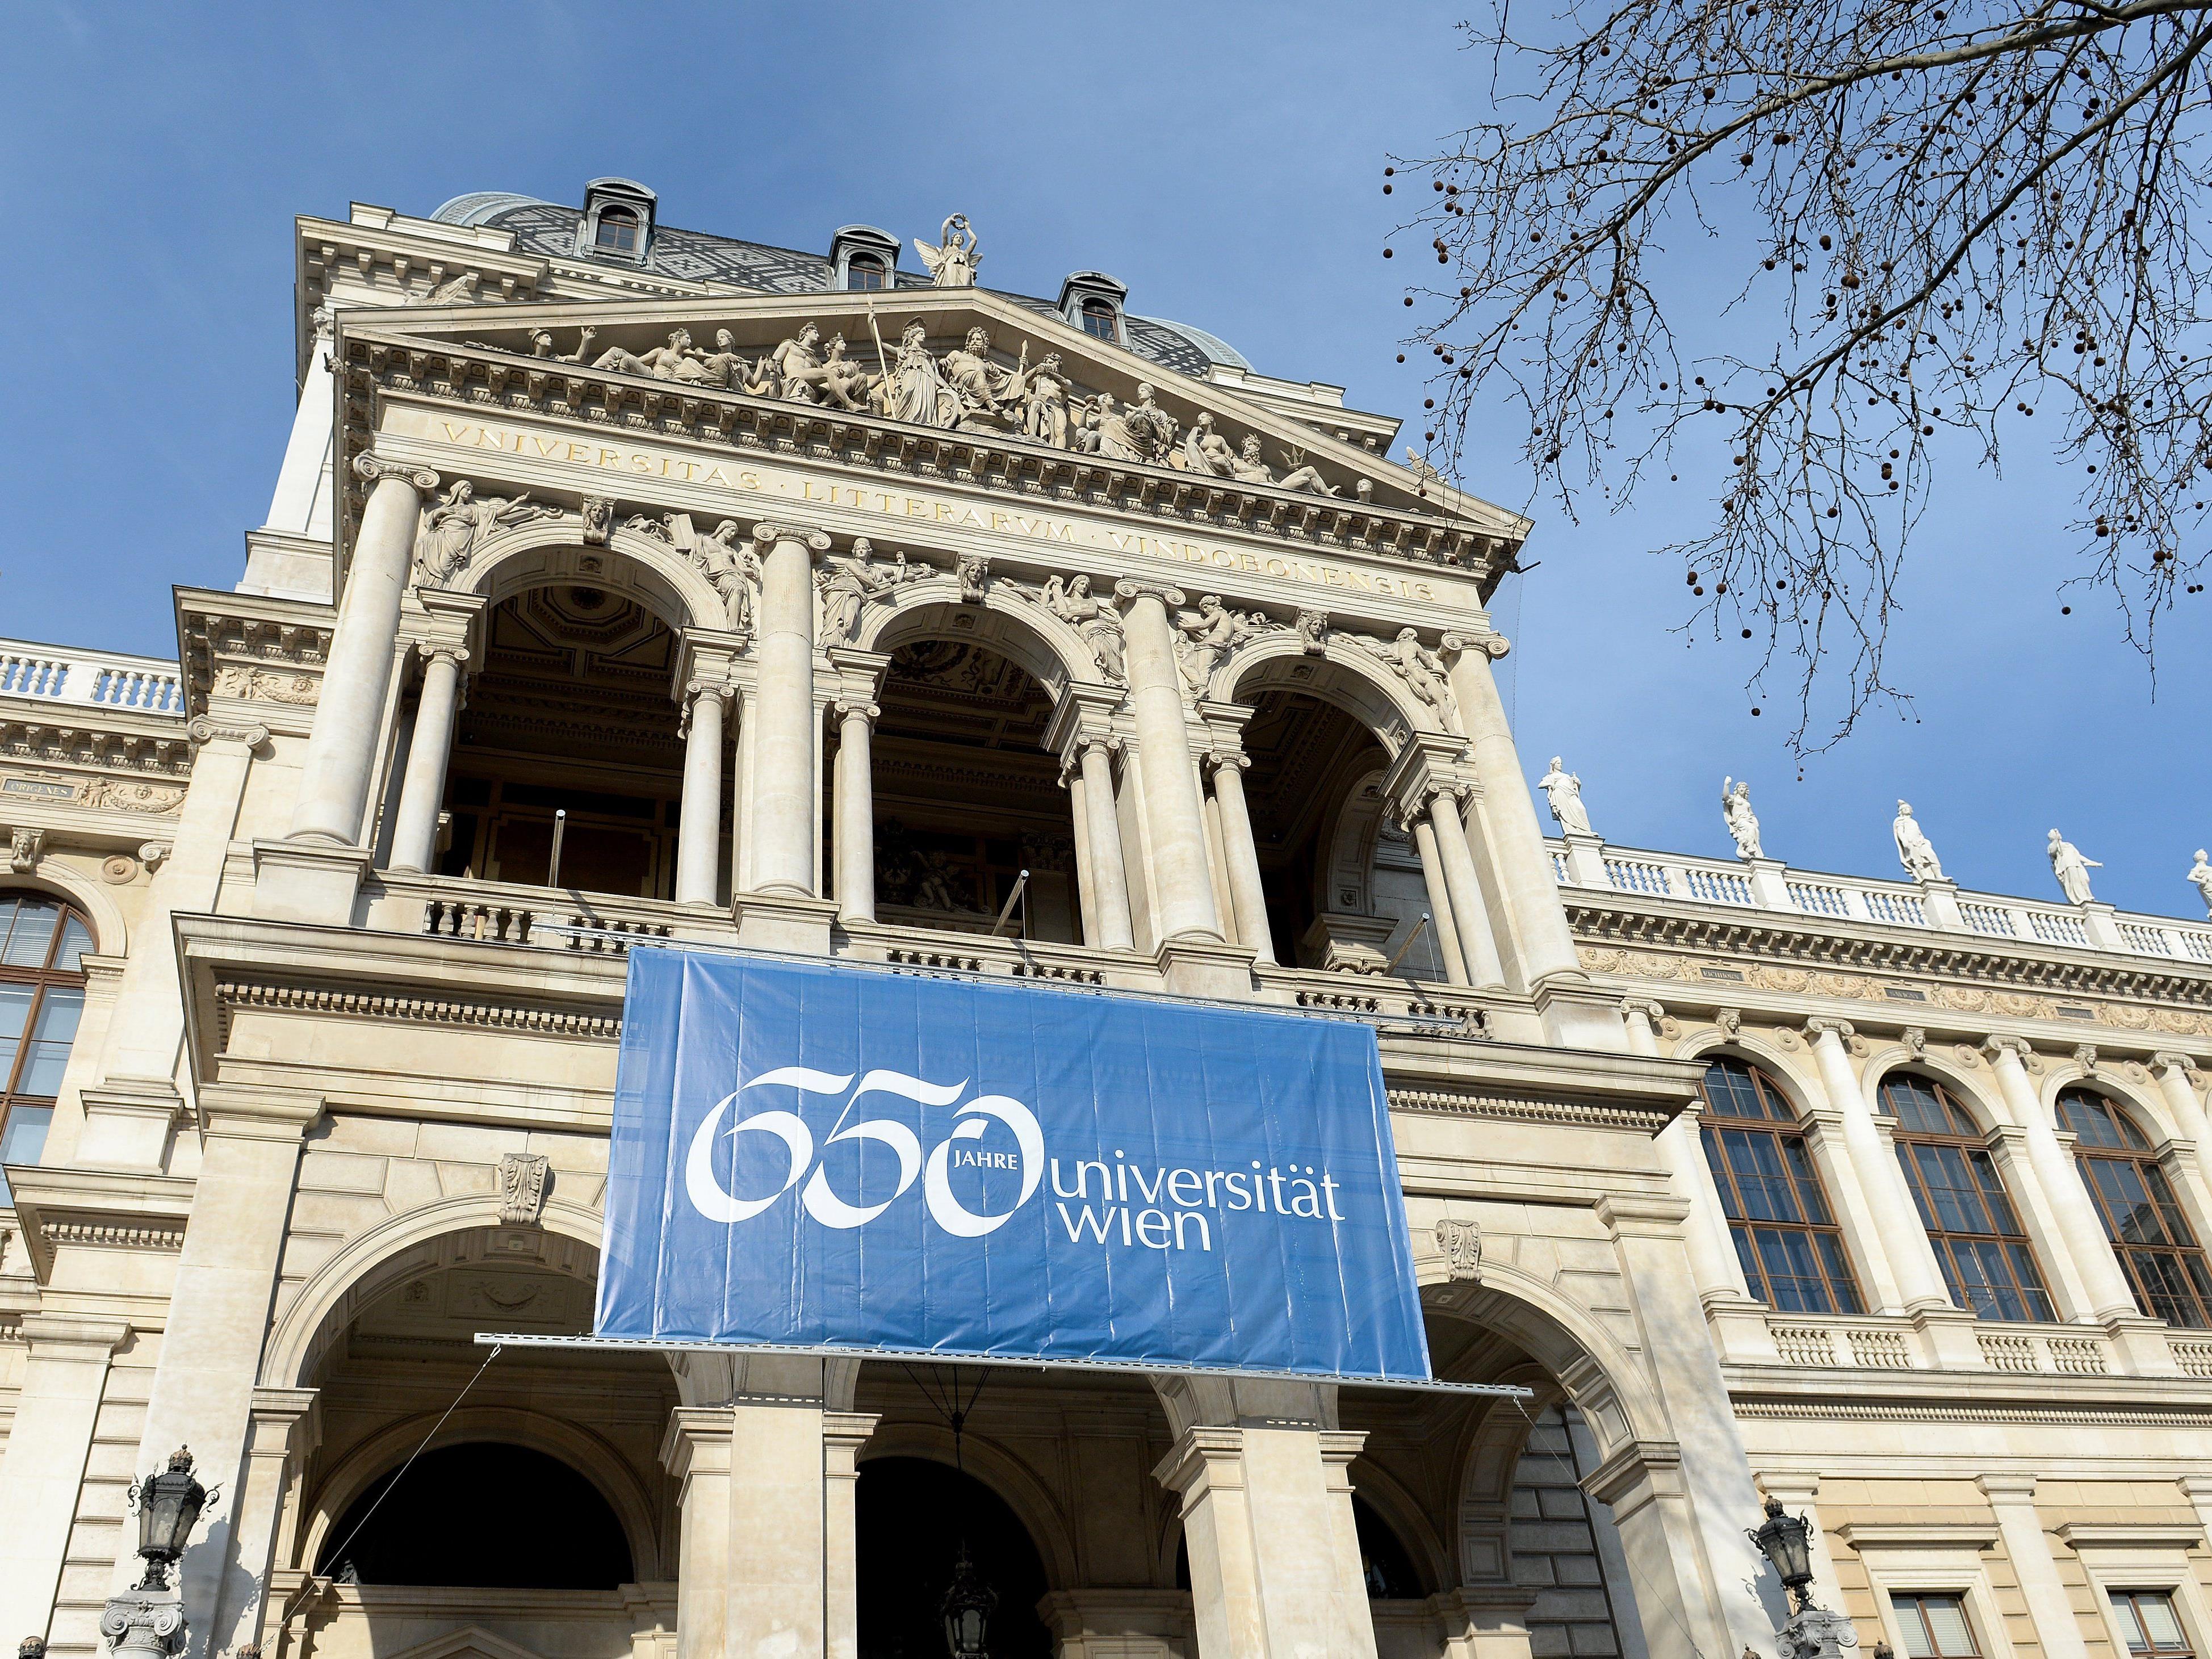 Wanderausstellung zum 650-Jahr-Jubiläum der Uni Wien widmet sich der Polarisierung und und Einschüchterung zur Vertreibung und Vernichtung im NS-Regime